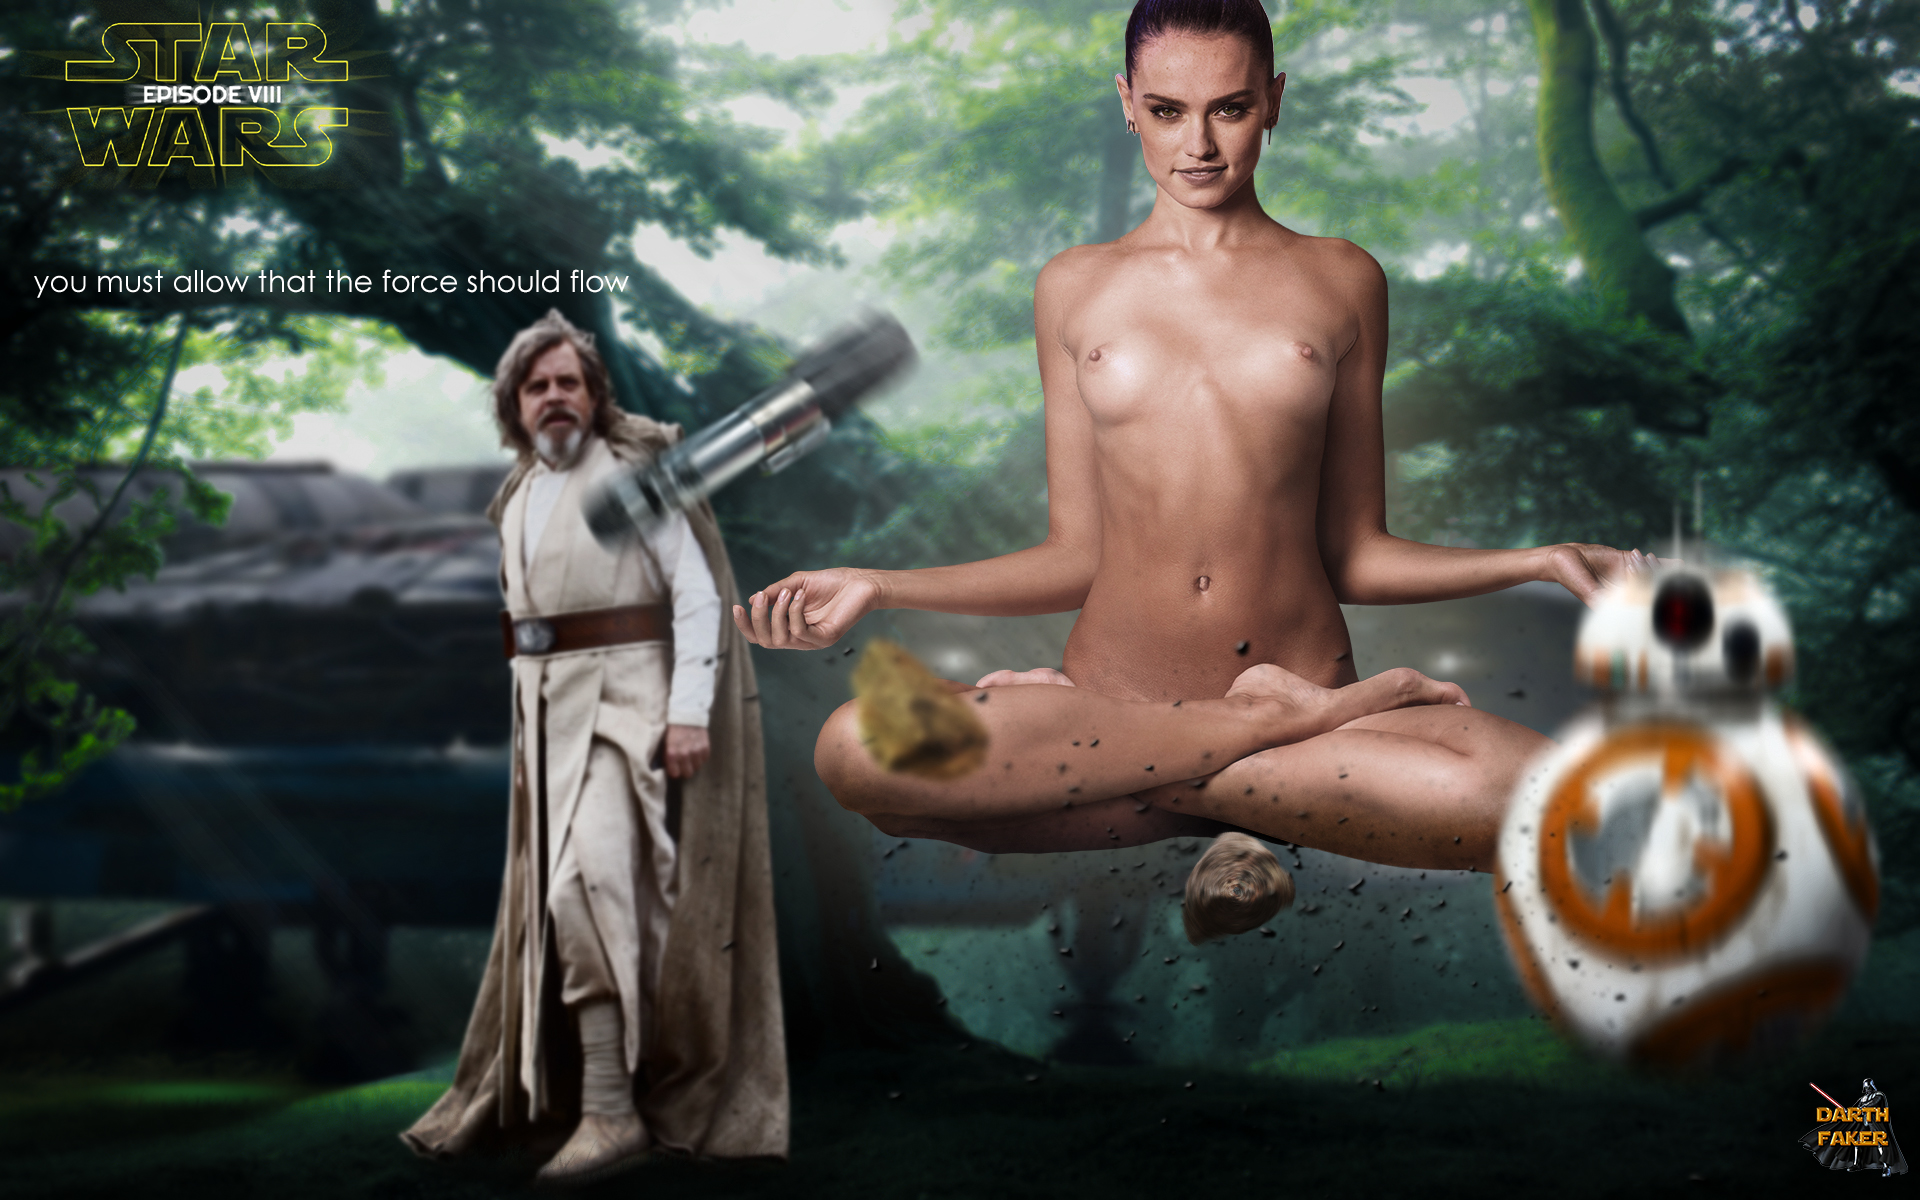 Star wars naked fakes